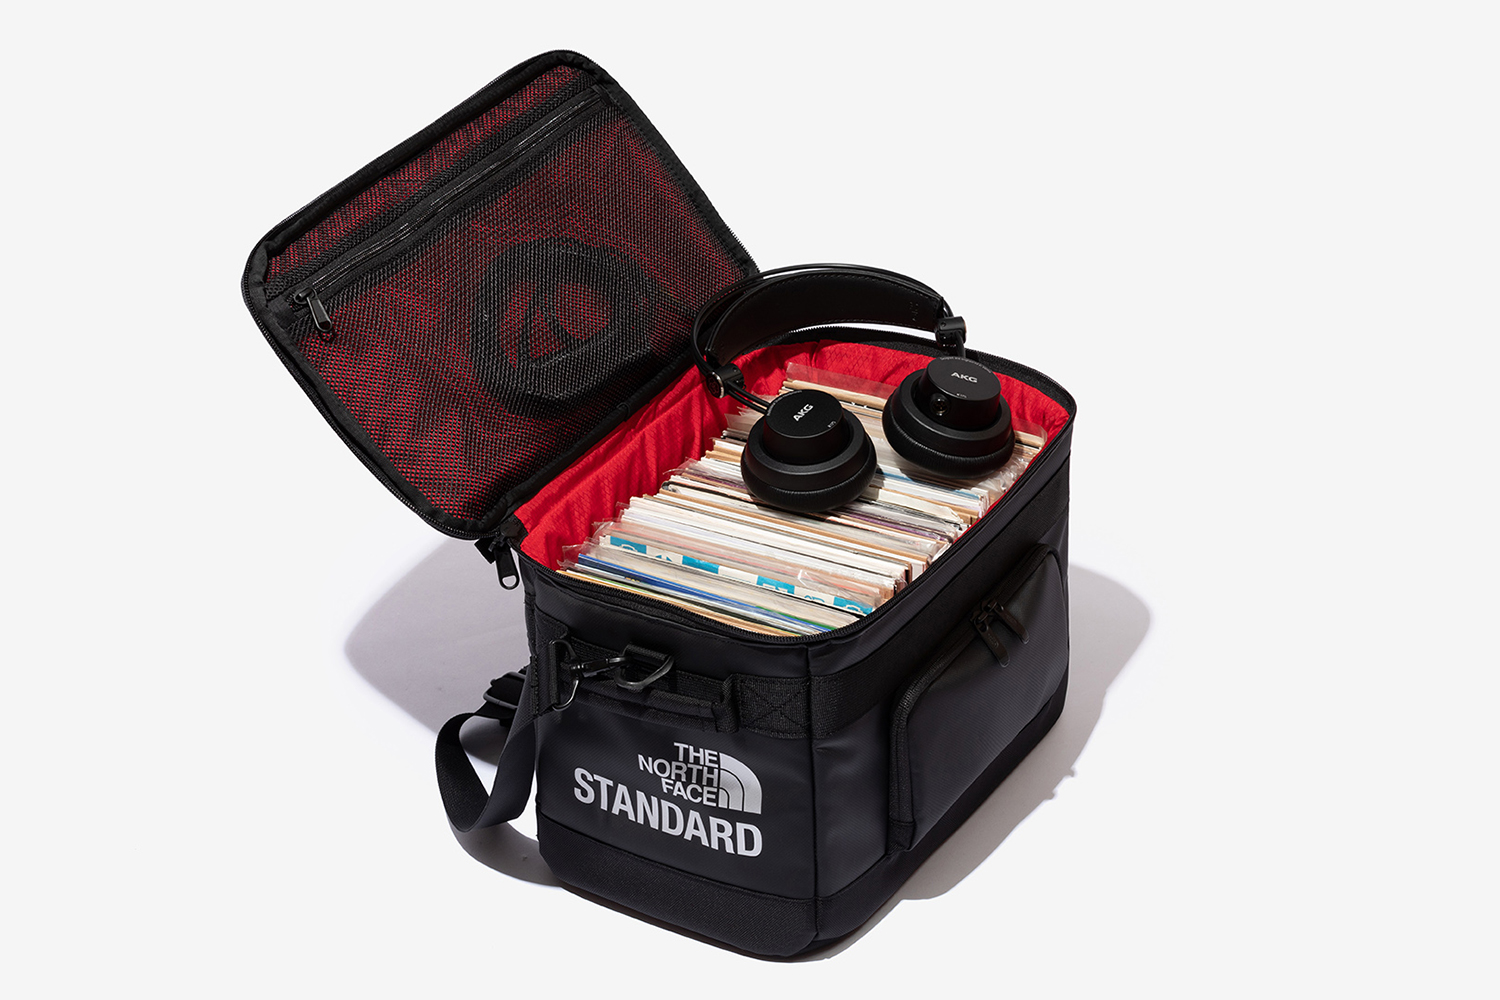 THE NORTH FACE STANDARDのオリジナルレコードバッグが9月15日に再登場